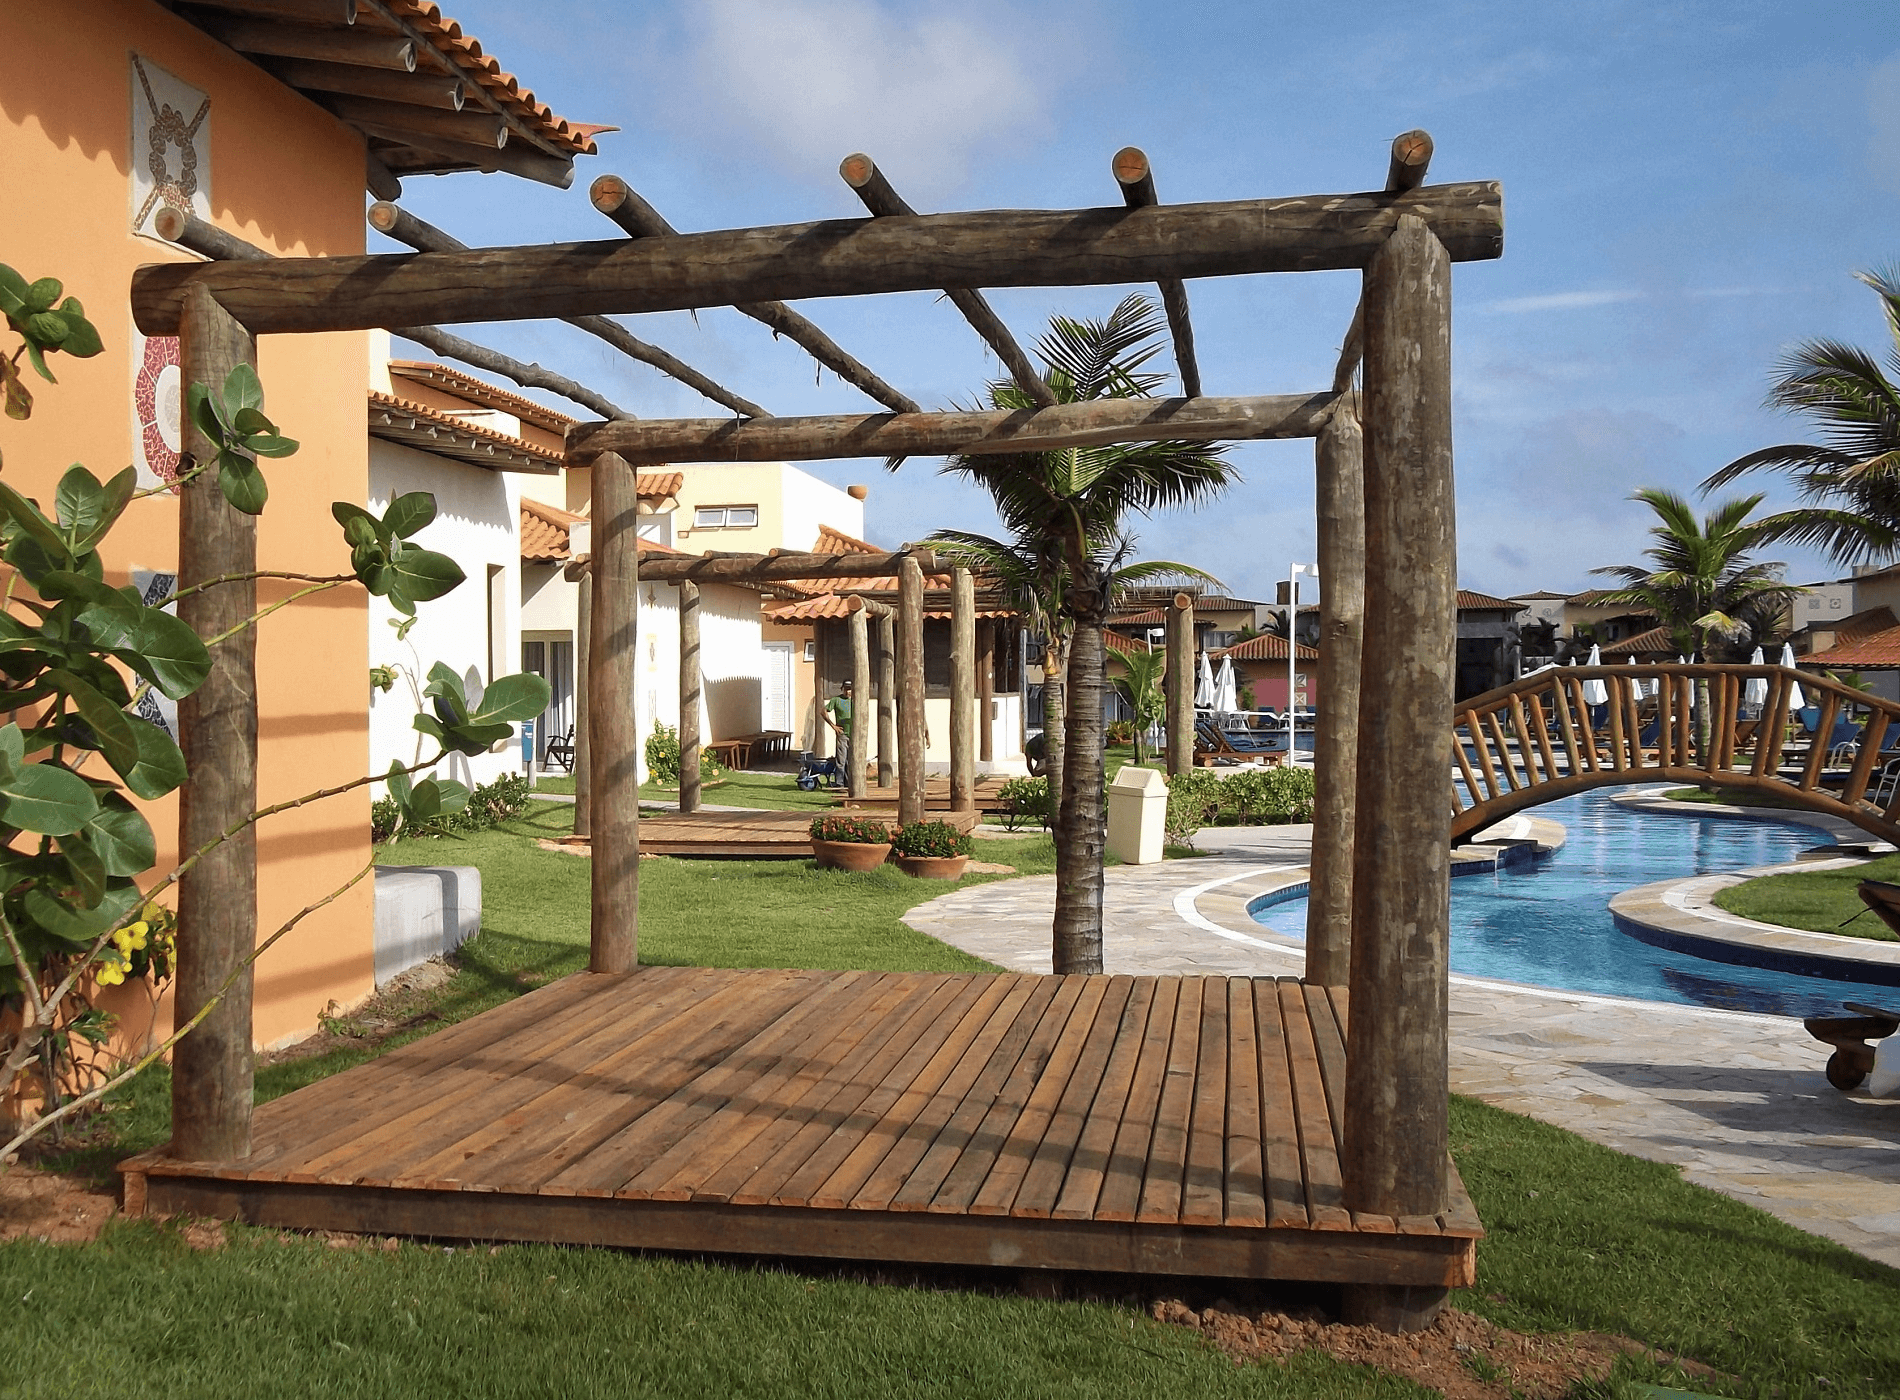 O Plano de Manutenção deste Resort compreendeu os serviços de pintura, para as estruturas existentes, e a instalação de novos pergolados com deck de madeira.